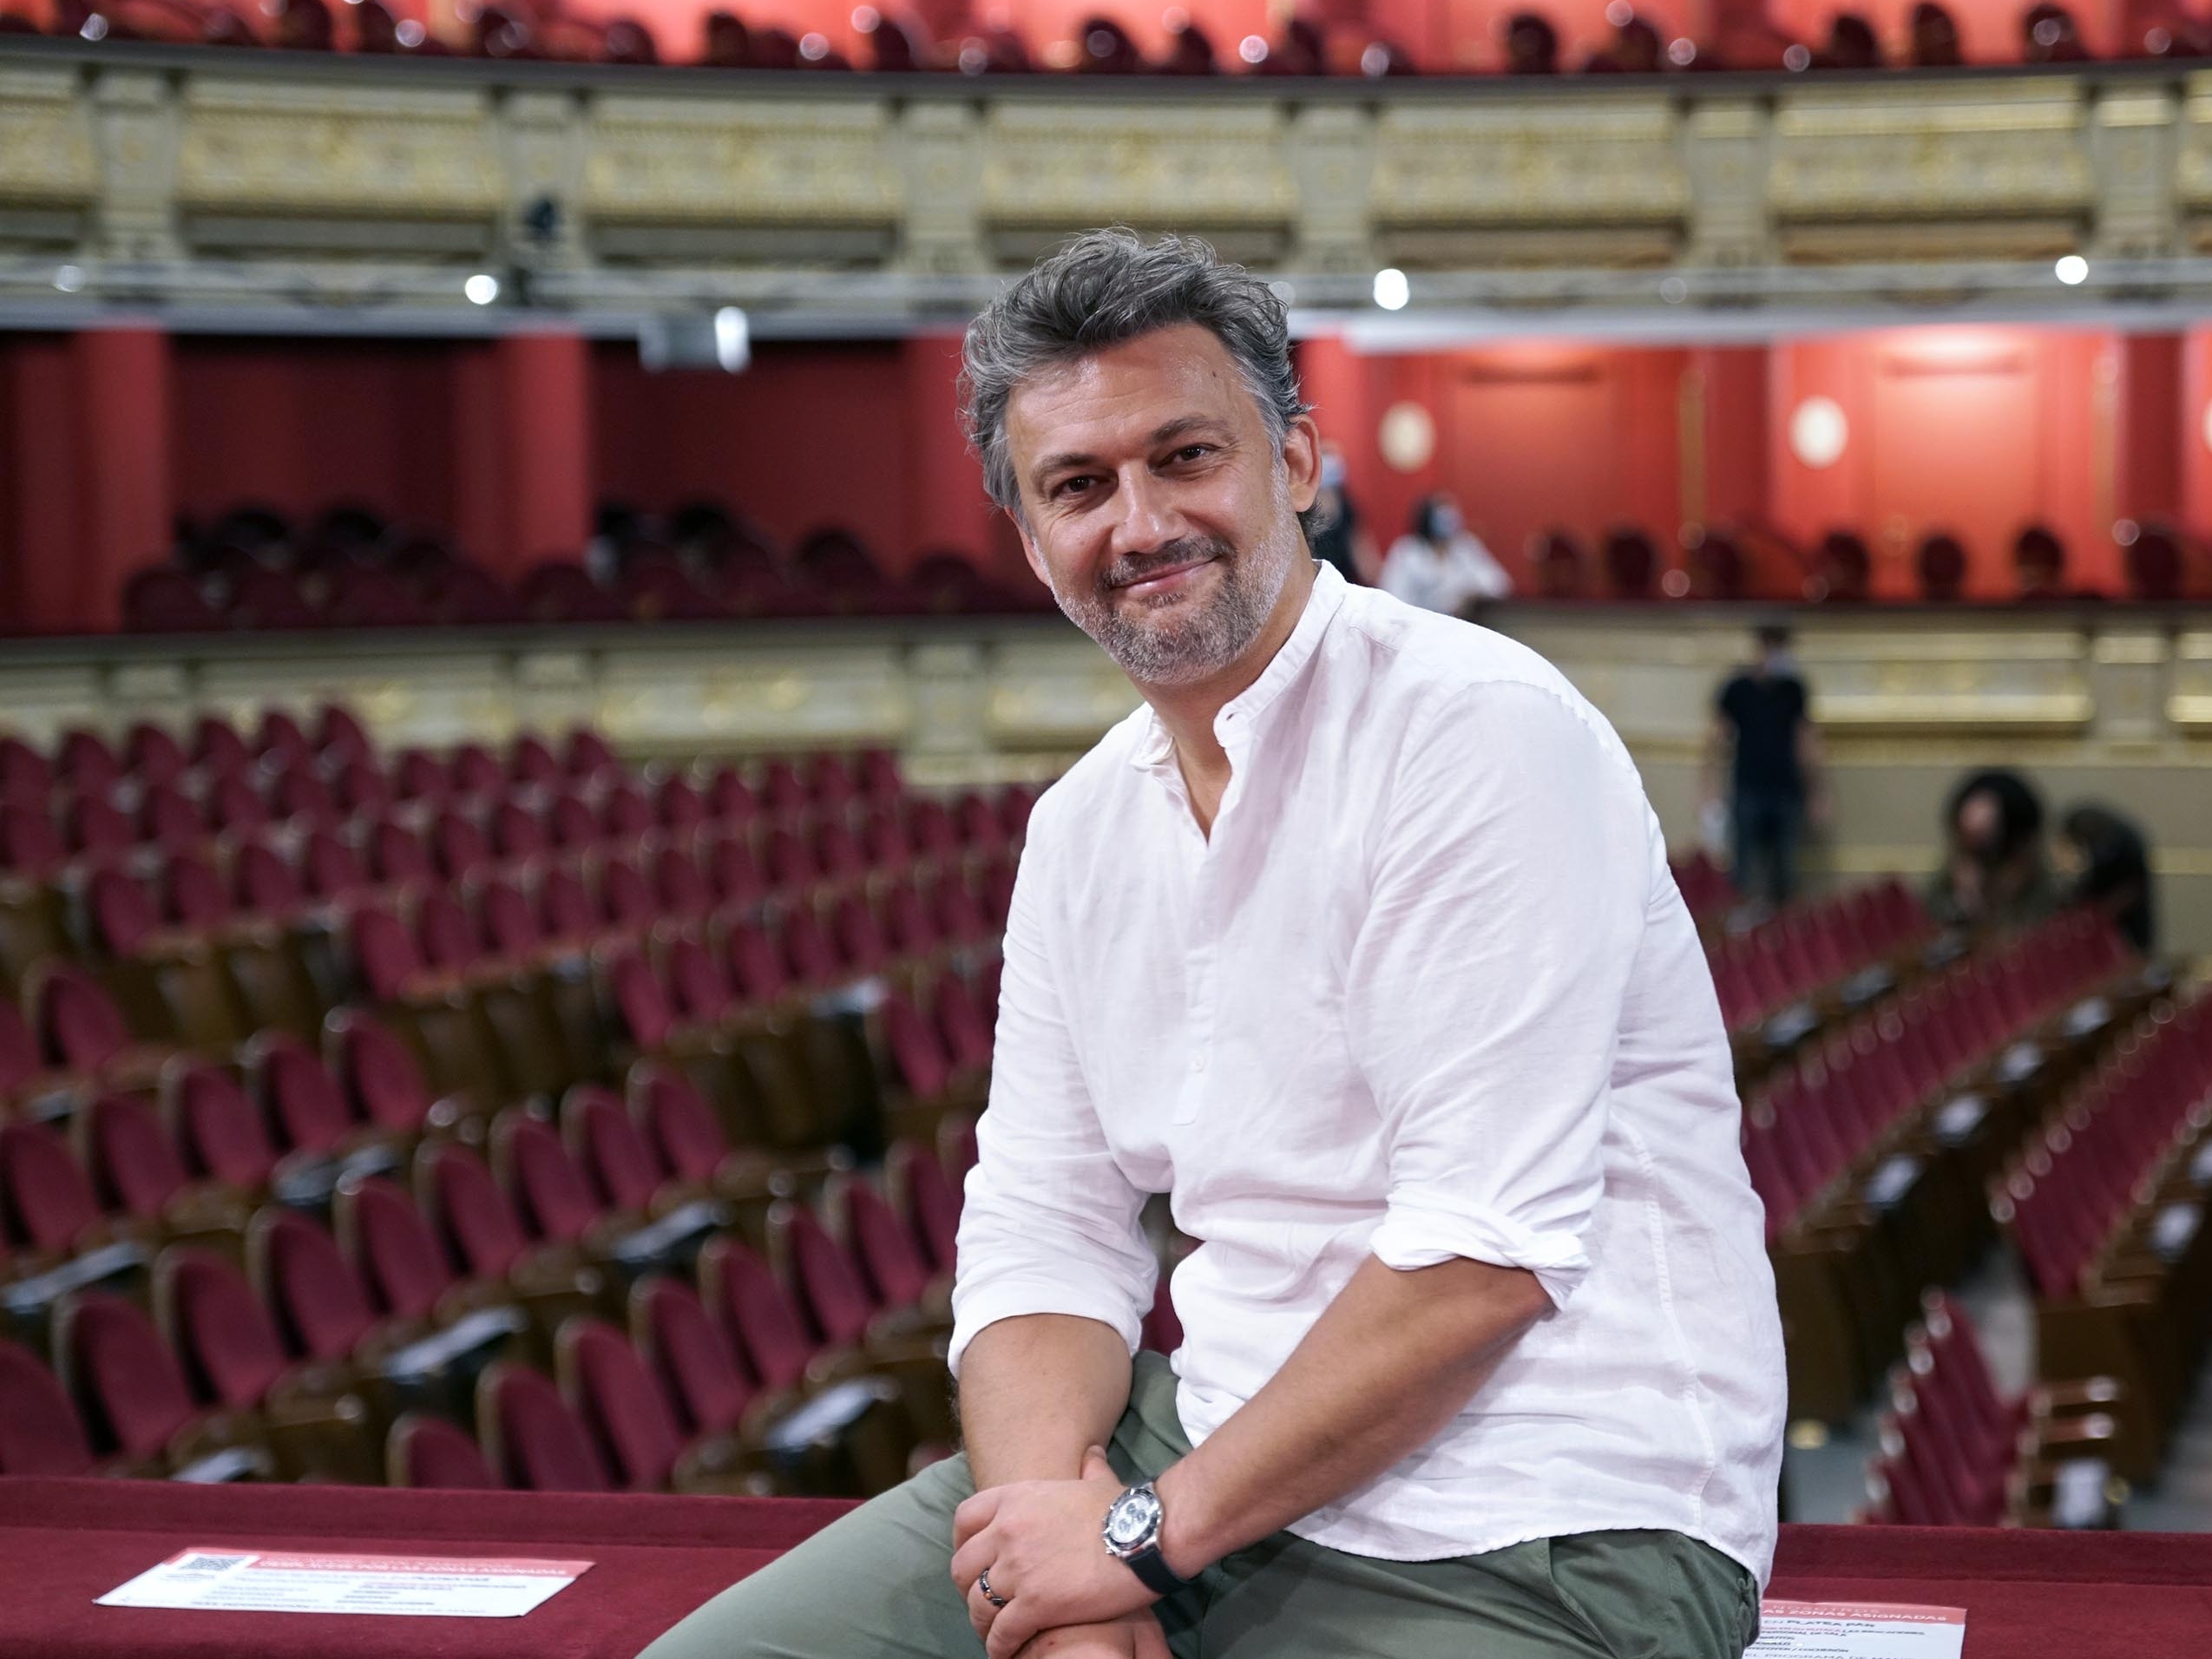 Jonas Kaufmann, tras el histórico bis en el Teatro Real: “Fue impresionante vivirlo desde el escenario”